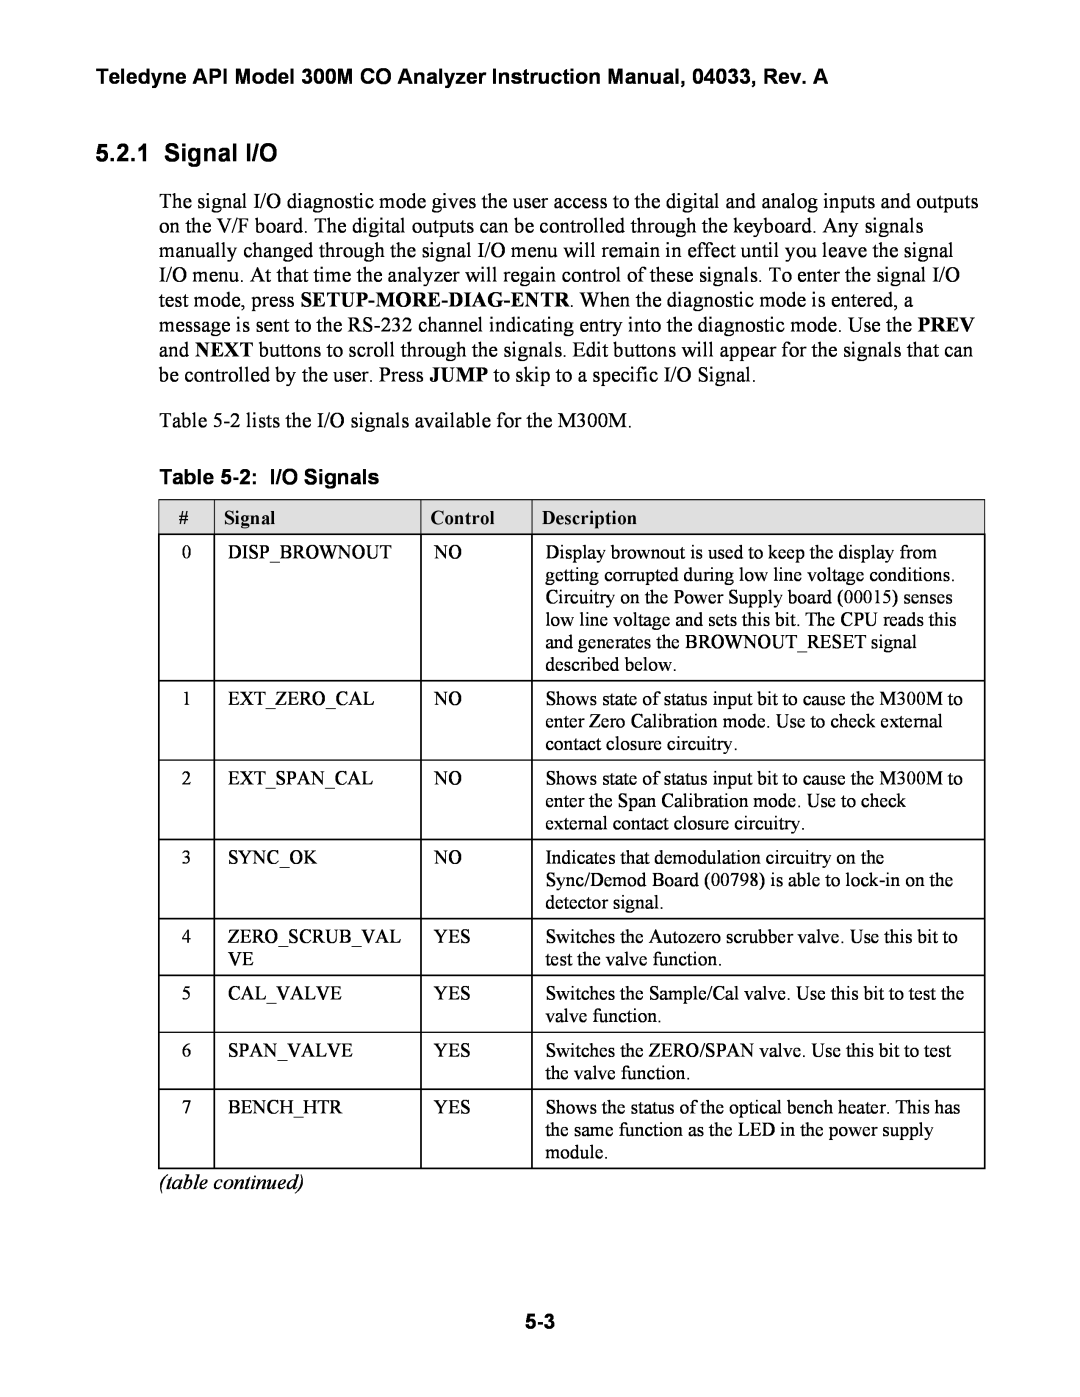 Teledyne 300M instruction manual Signal I/O, 2 I/O Signals, table continued 